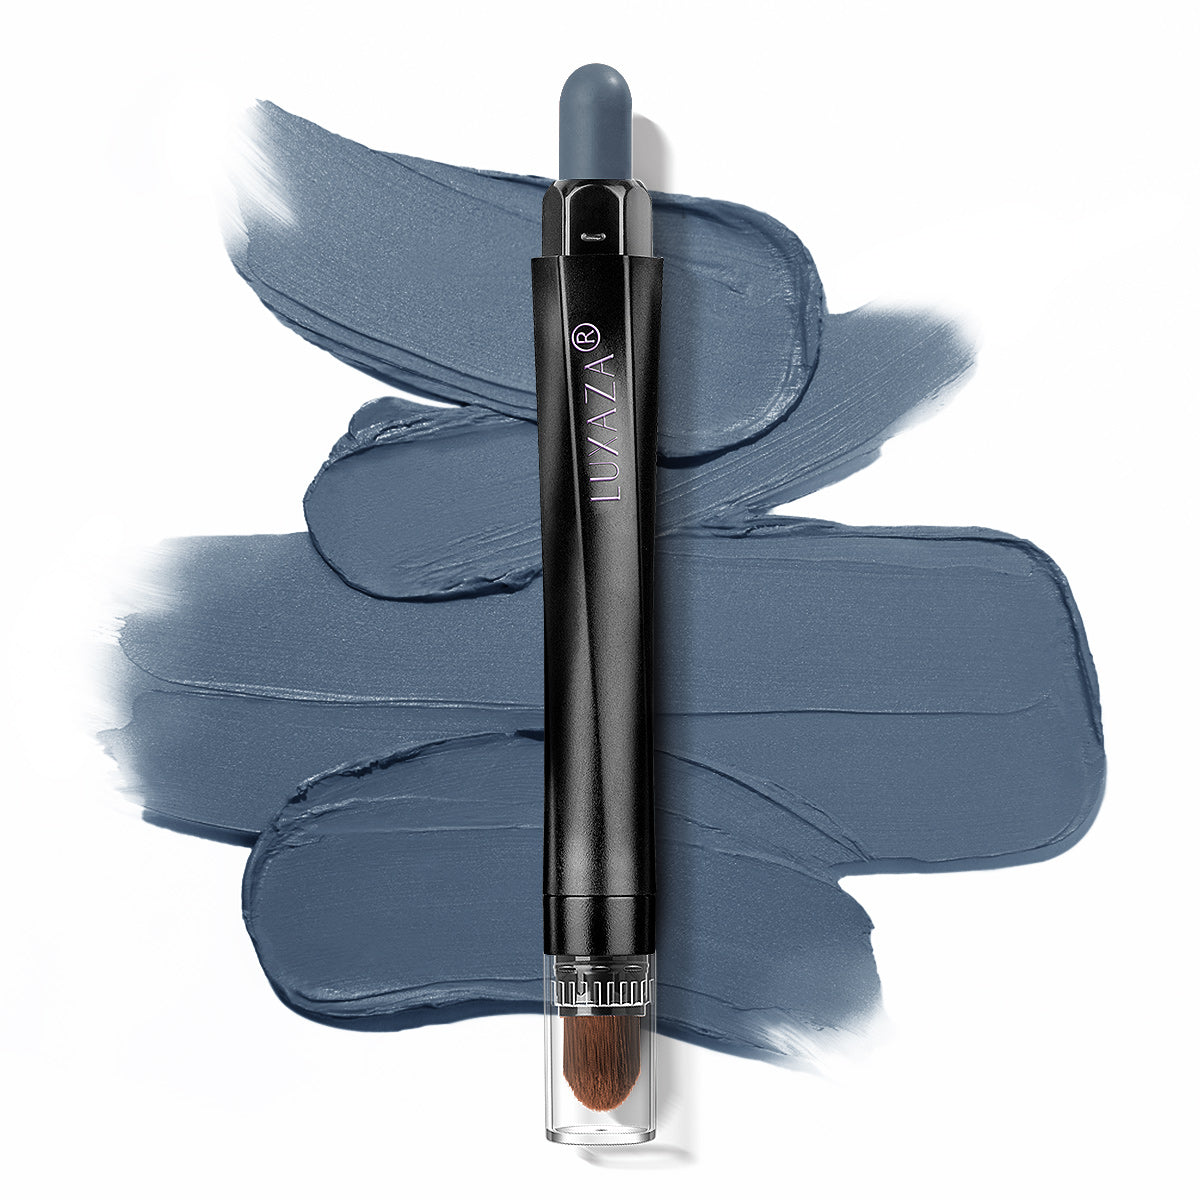 Luxaza - Magic Color Eyeshadow Stick #170 - Steeple Gray